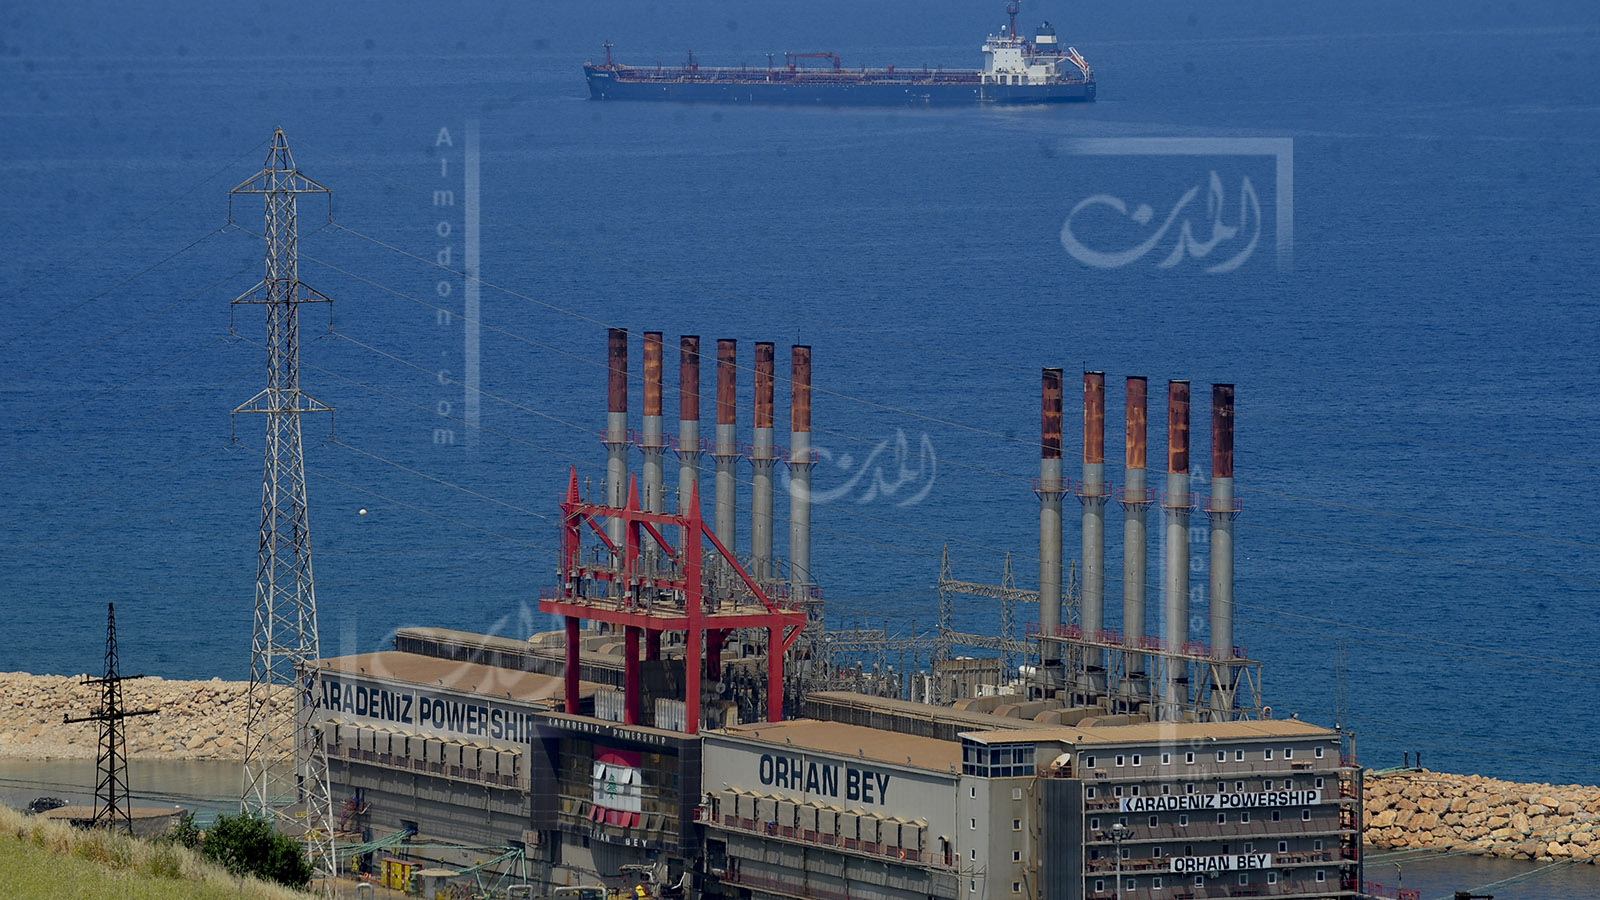 النفط العراقي يقترب من لبنان: ماذا عن الخبايا الأخرى؟